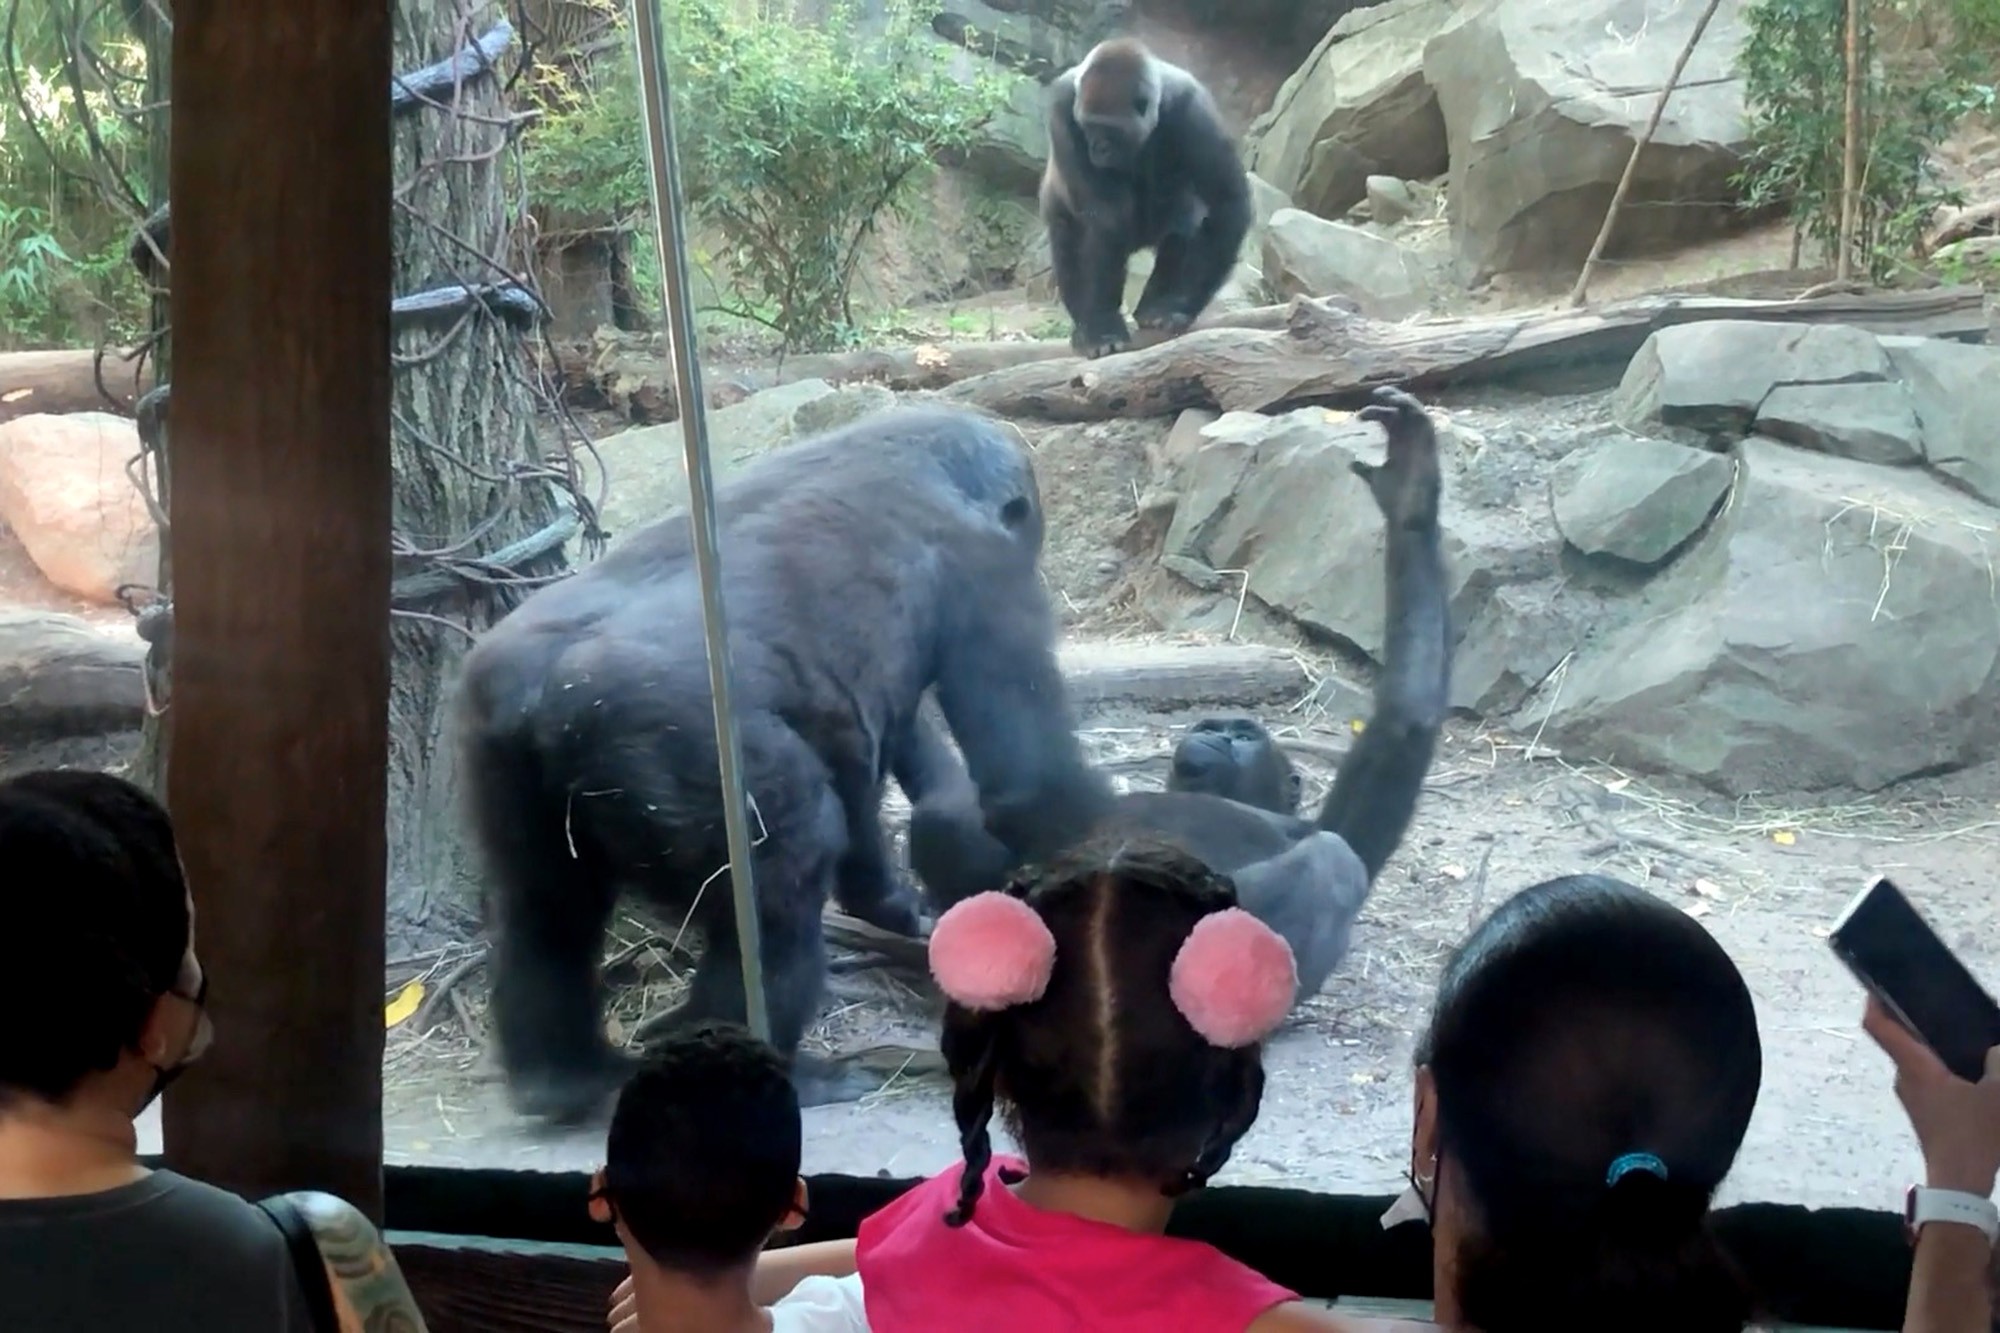 Llamado de la naturaleza: Dos gorilas "prendieron la actos eróticos en zoológico de Bronx